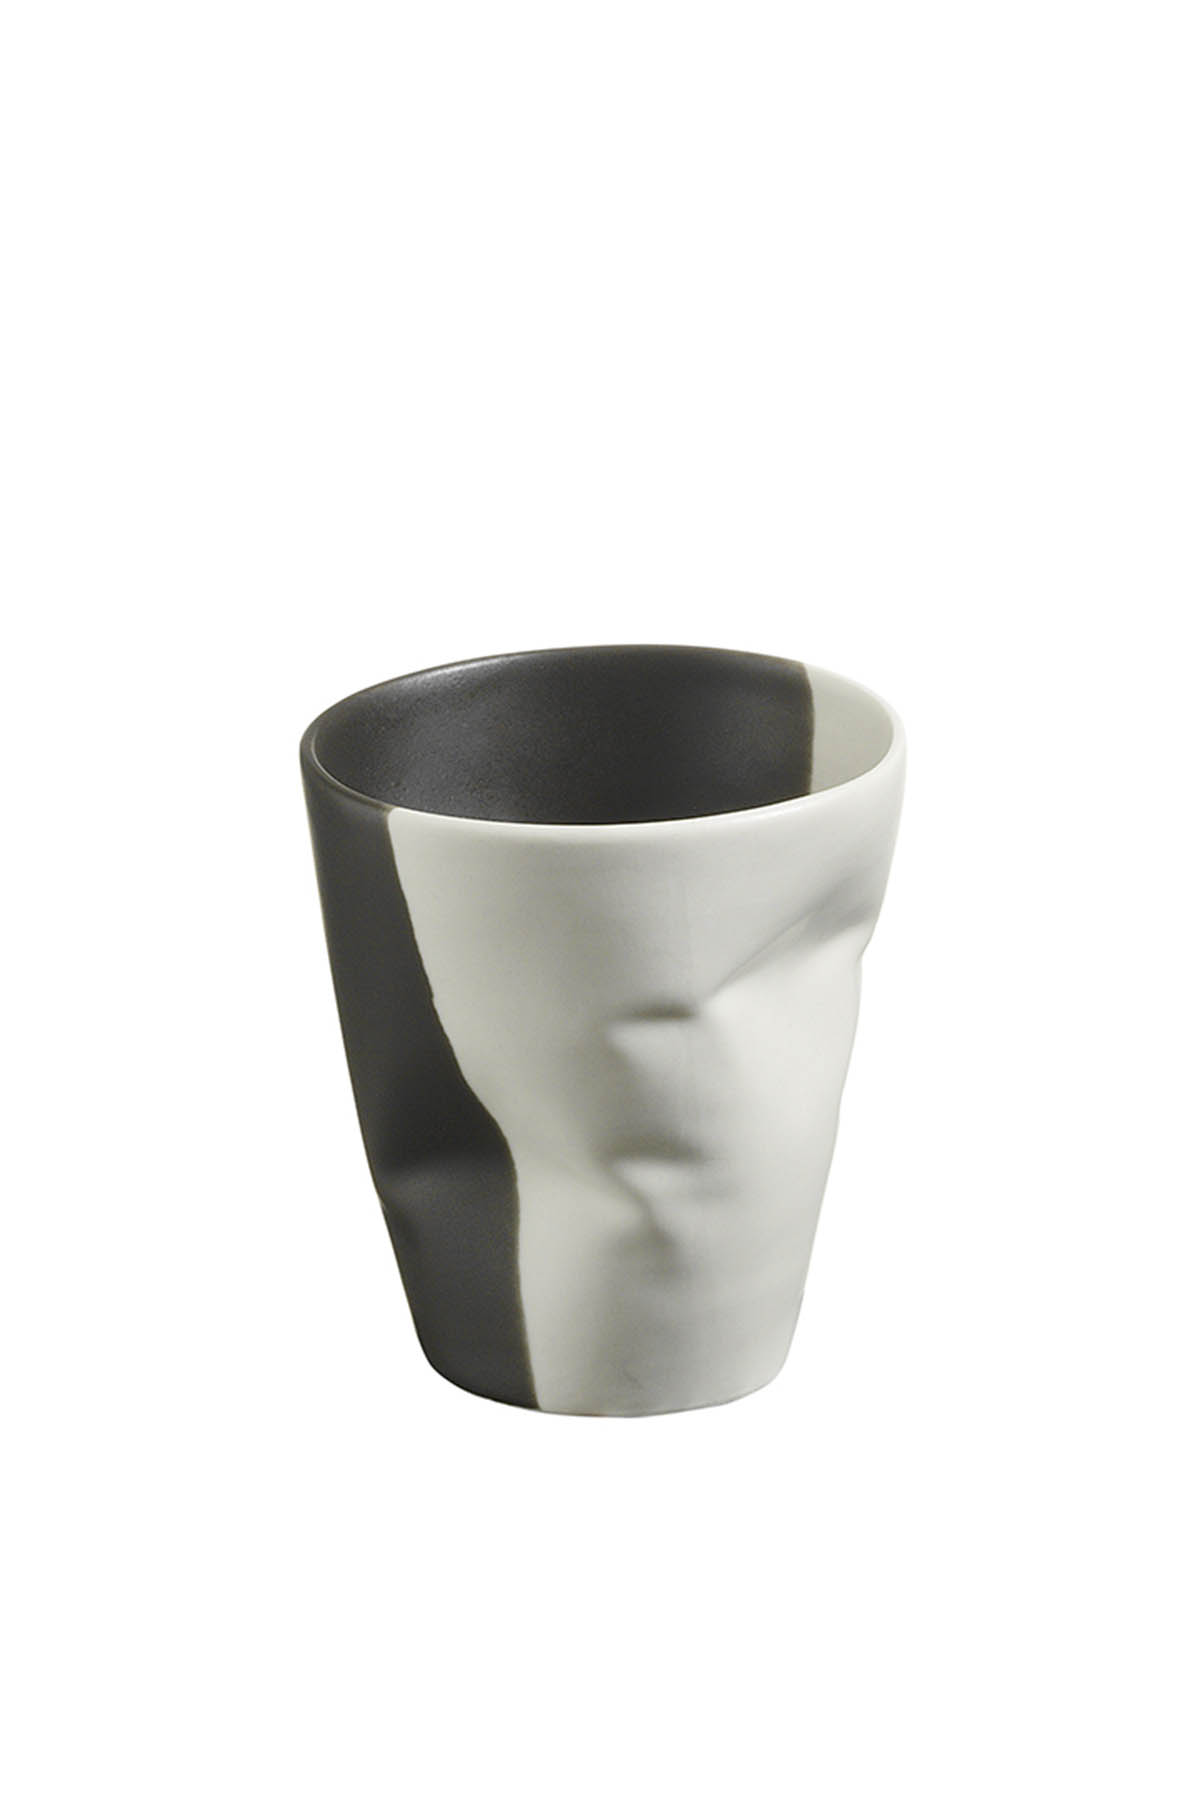 Kütahya Porselen Crash 2'li Espresso Kahve Seti Krem/Siyah